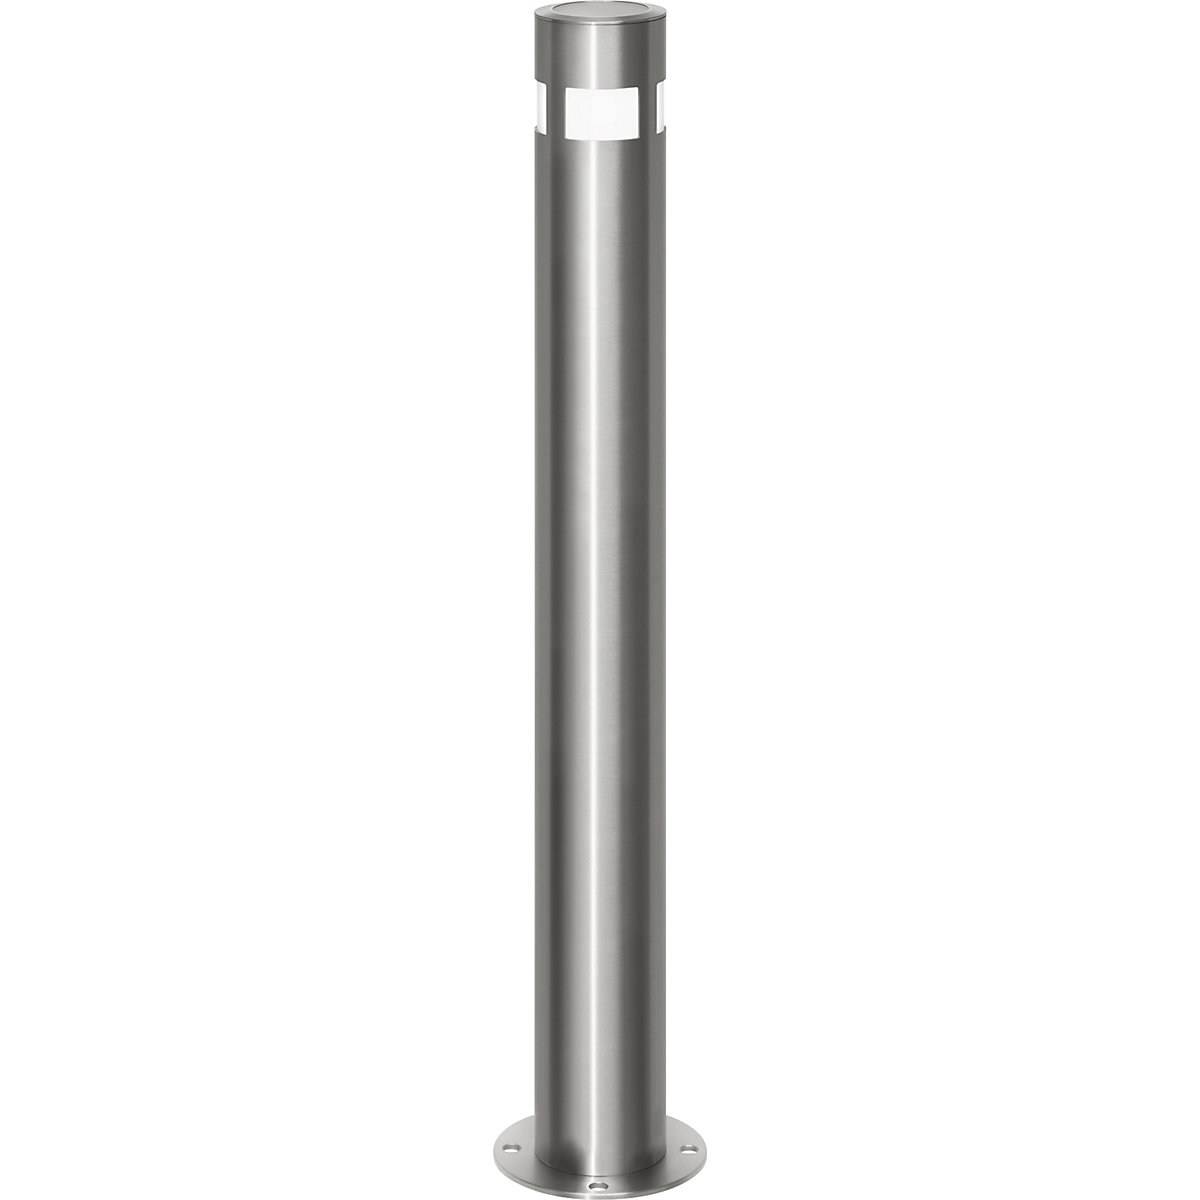 Edelstahl-Sperrpfosten, Ø 102 mm, mit Solar-Leuchtkopf, zum Aufdübeln, feststehend